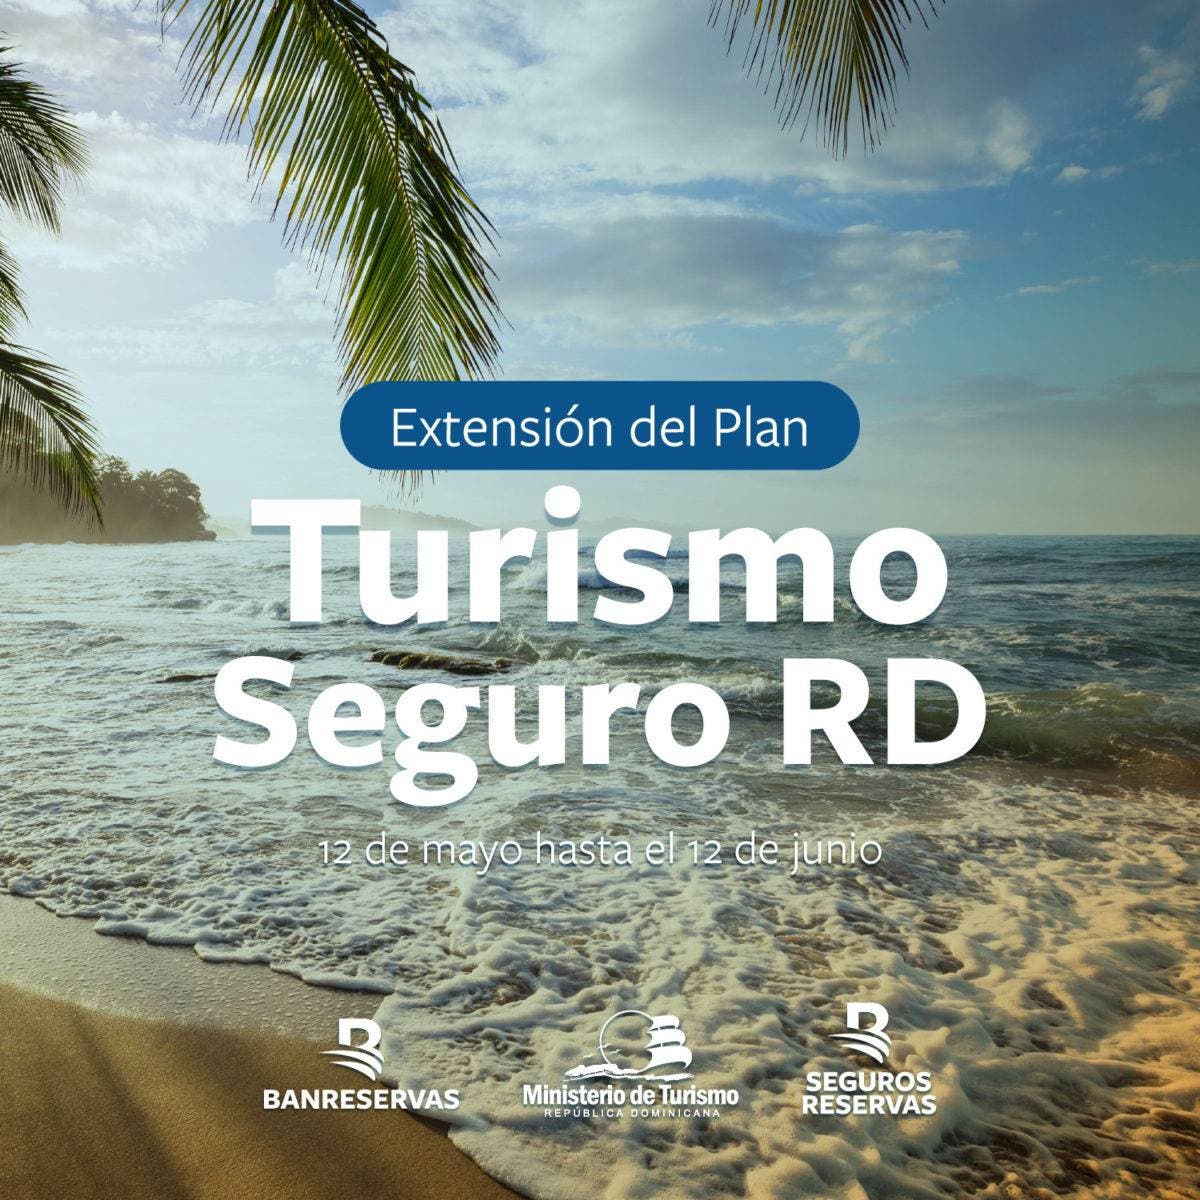 Continúa extensión del Plan Turismo Seguro RD